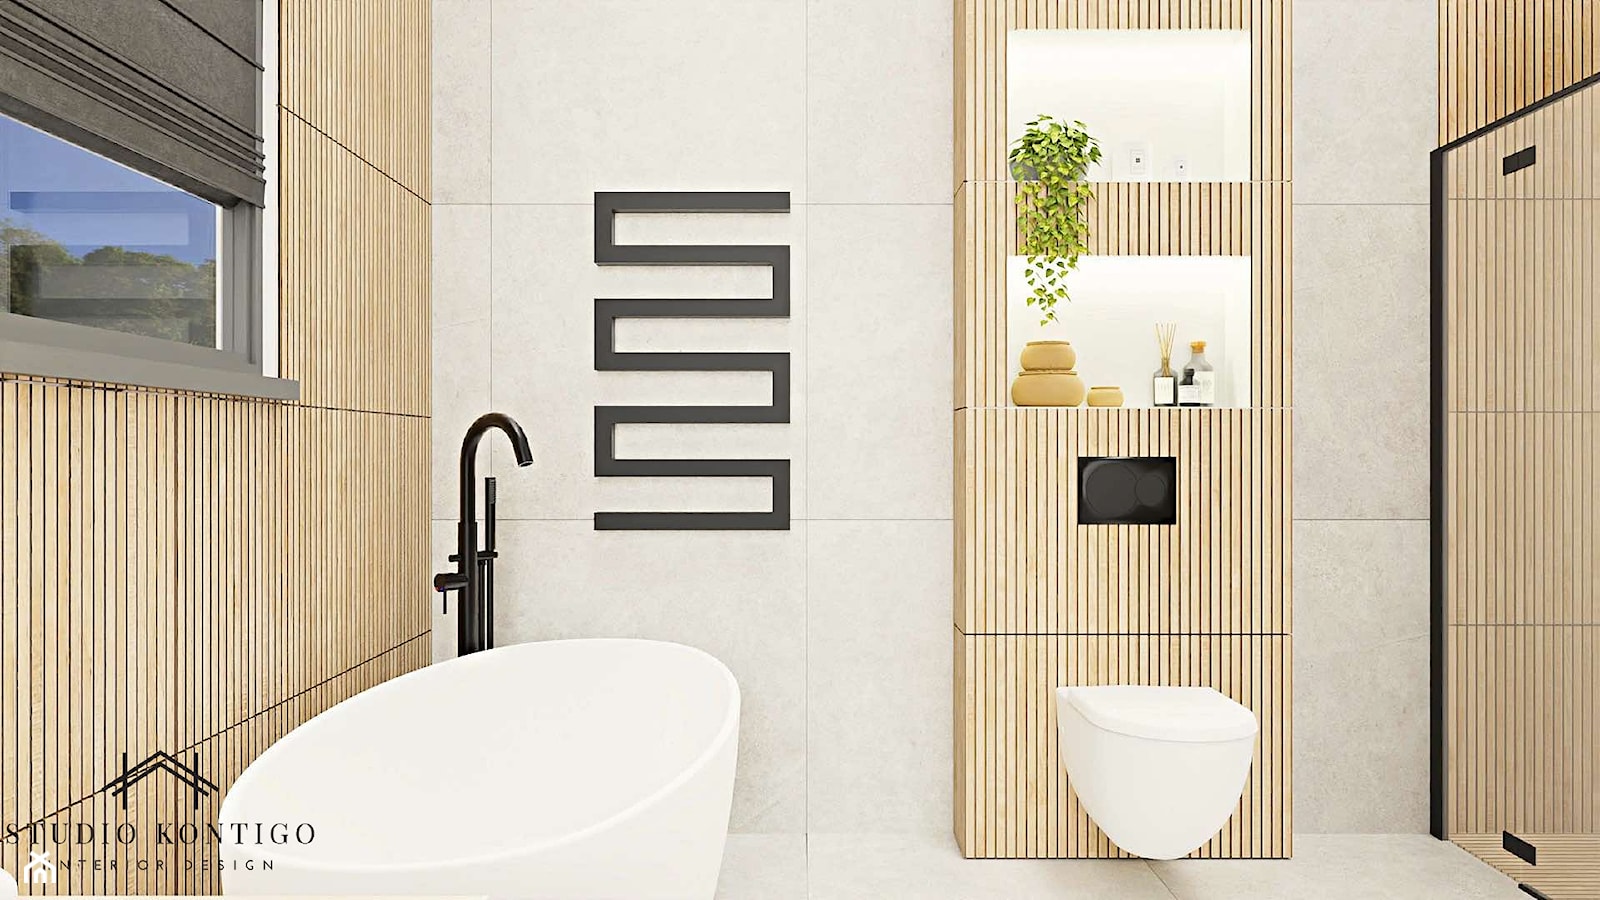 Nowoczesna łazienka z płytkami ryflowanymi. - zdjęcie od Studio Kontigo - Homebook